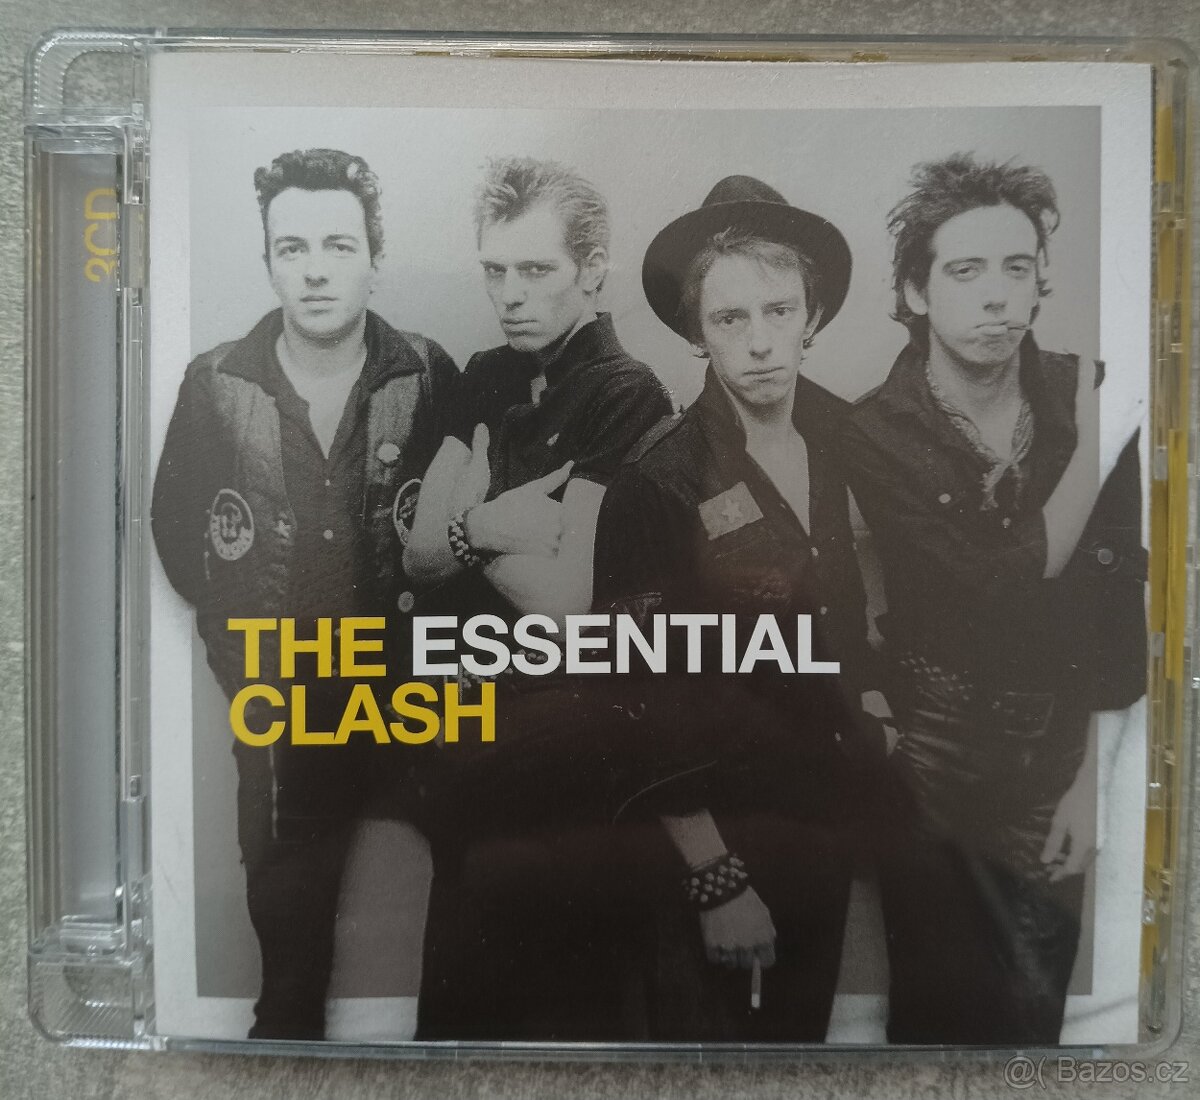 The Clash - Essential clash 2CD